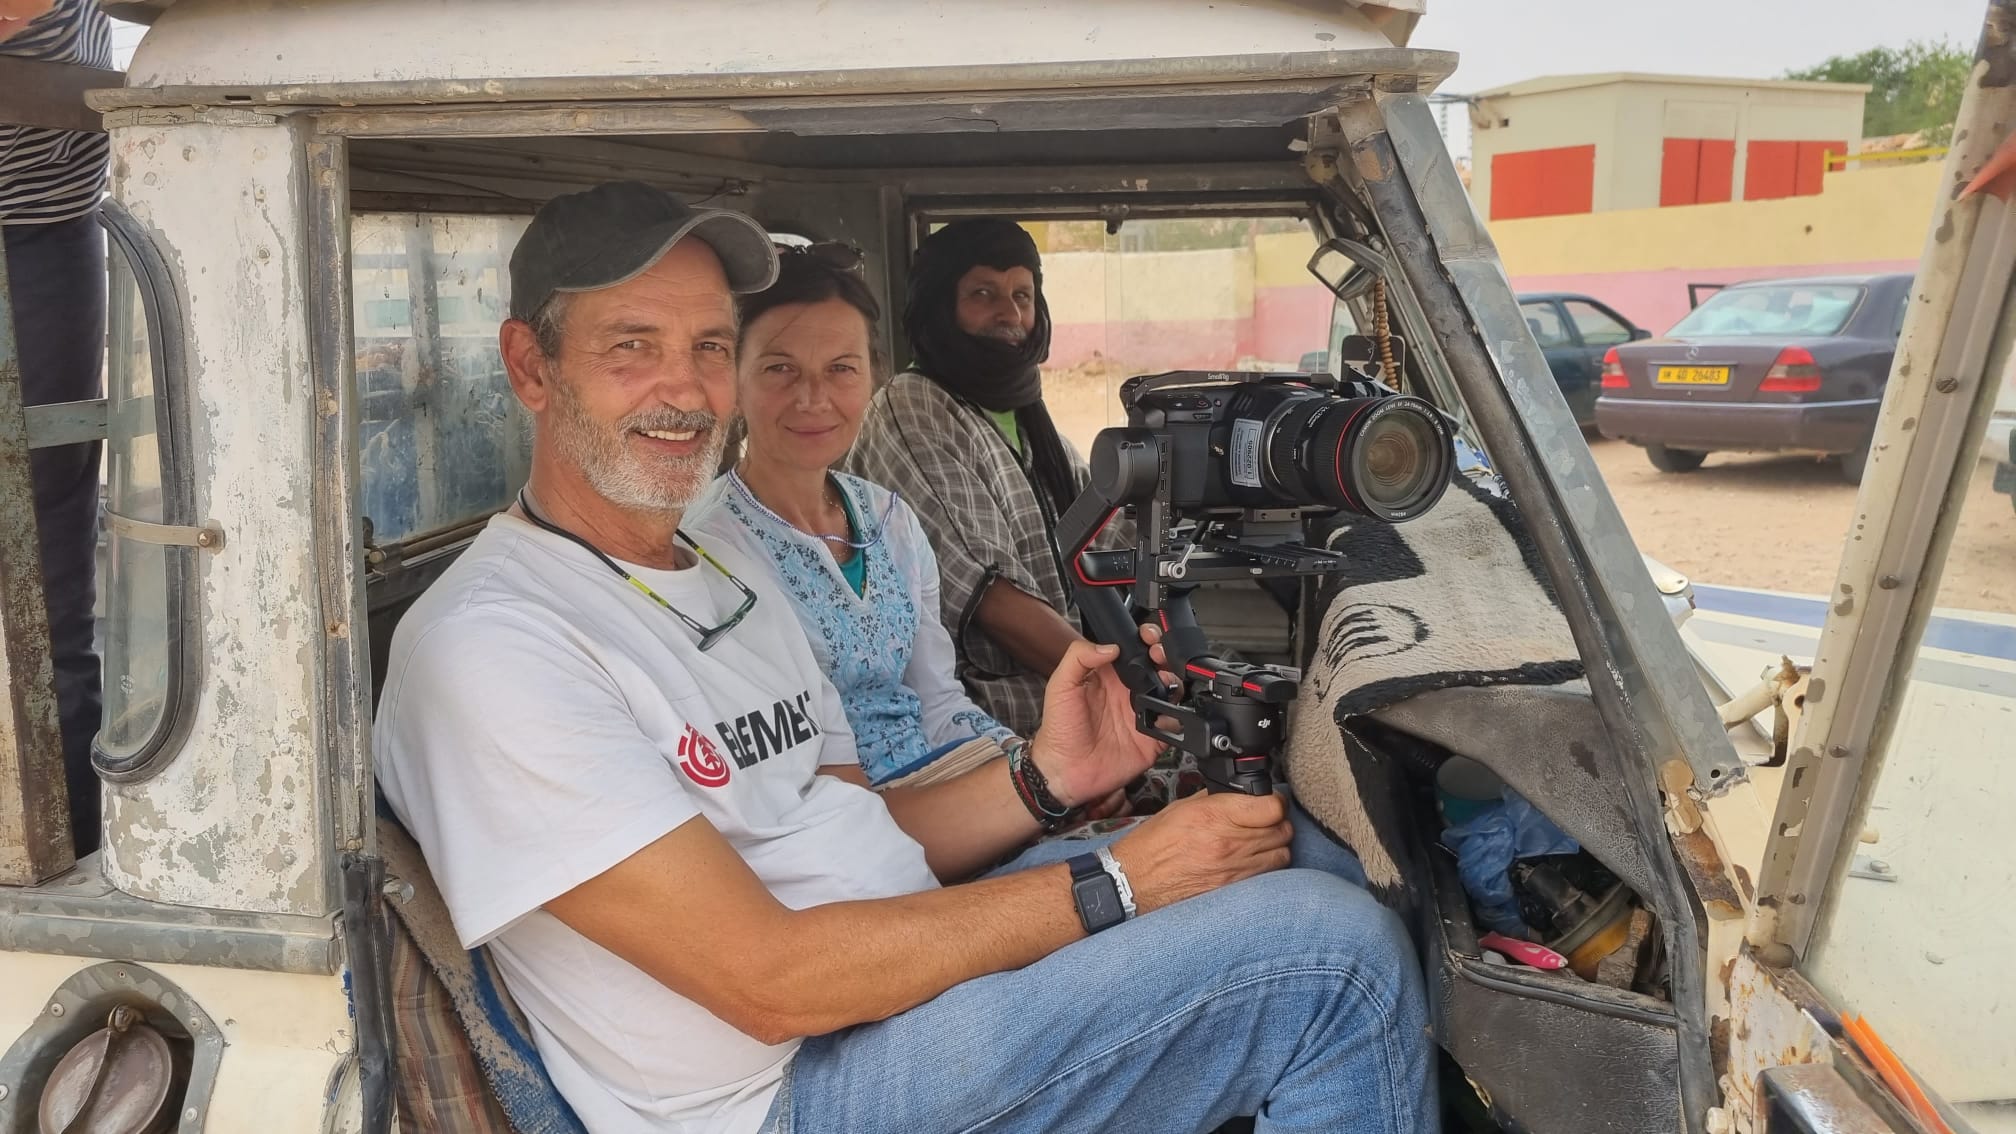 La UNED viaja al Sahara Occidental para participar en el Festival Internacional de Cine del Sáhara (FiSahara) Auserd, 2022. Beatriz Pérez Galán (Dpto. de Antropología, UNED) Yolanda Prieto (realizadora UNED MEDIA) directoras de la serie, y Juan Manuel Segura (cámara UNED MEDIA)